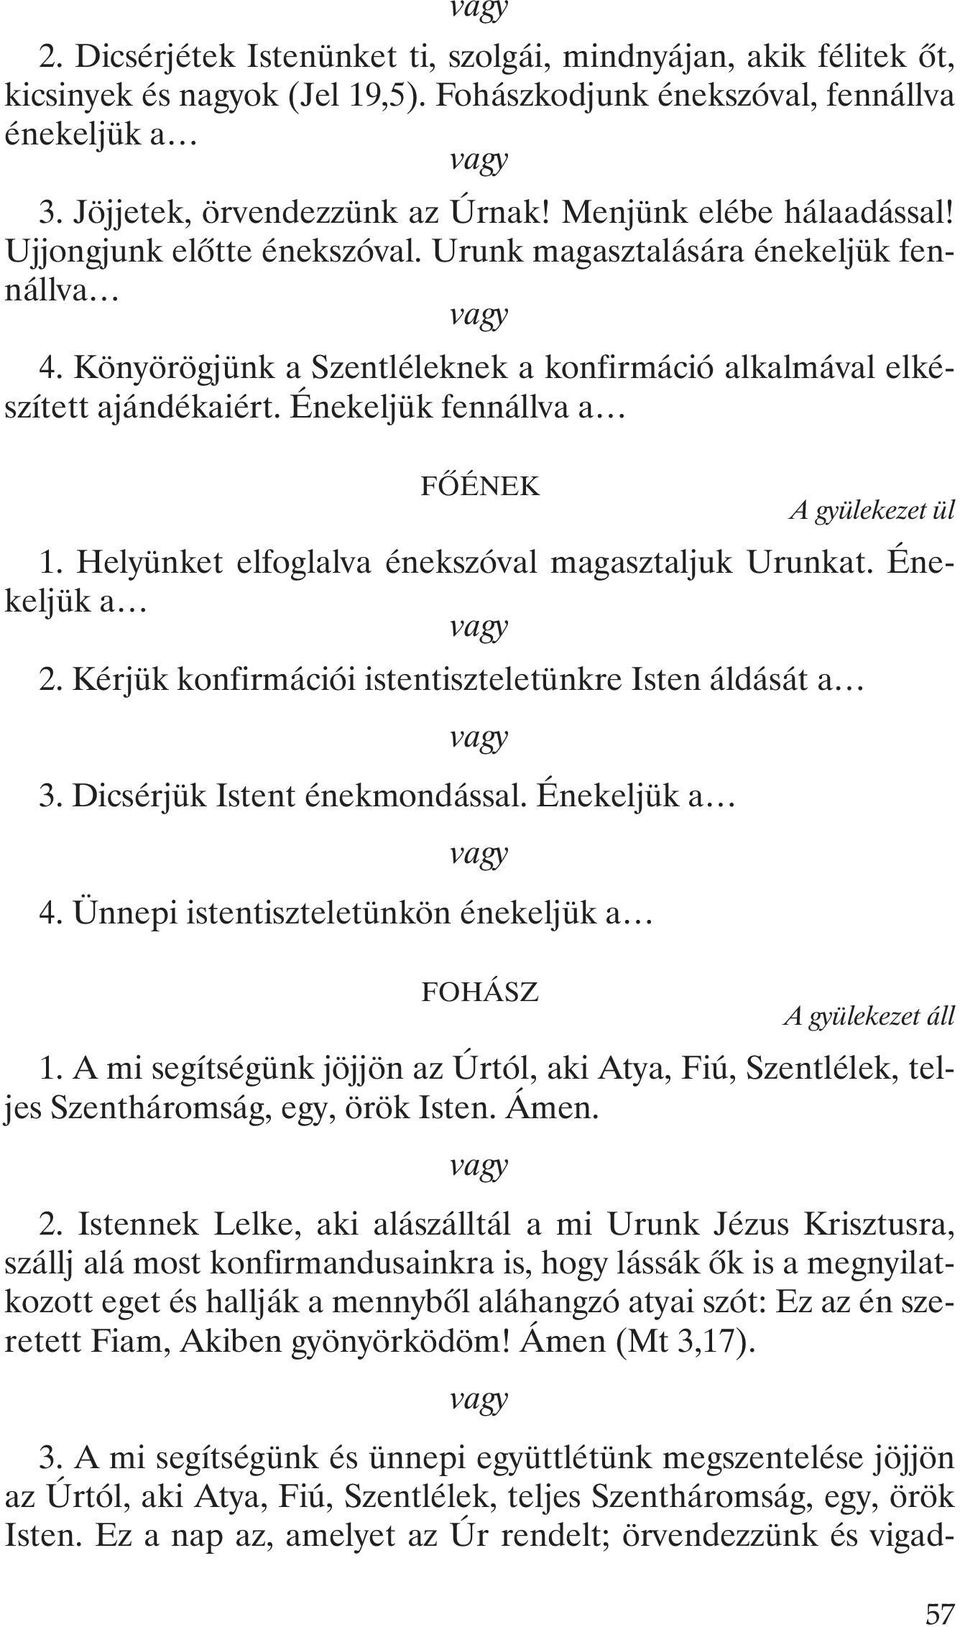 KONFIRMÁCIÓ. (Gyermekkeresztségben részesültek konfirmálása úrvacsorával) A  gyülekezet pl. a 162. dicséretet énekli: Ím, béjöttünk nagy örömben - PDF  Ingyenes letöltés